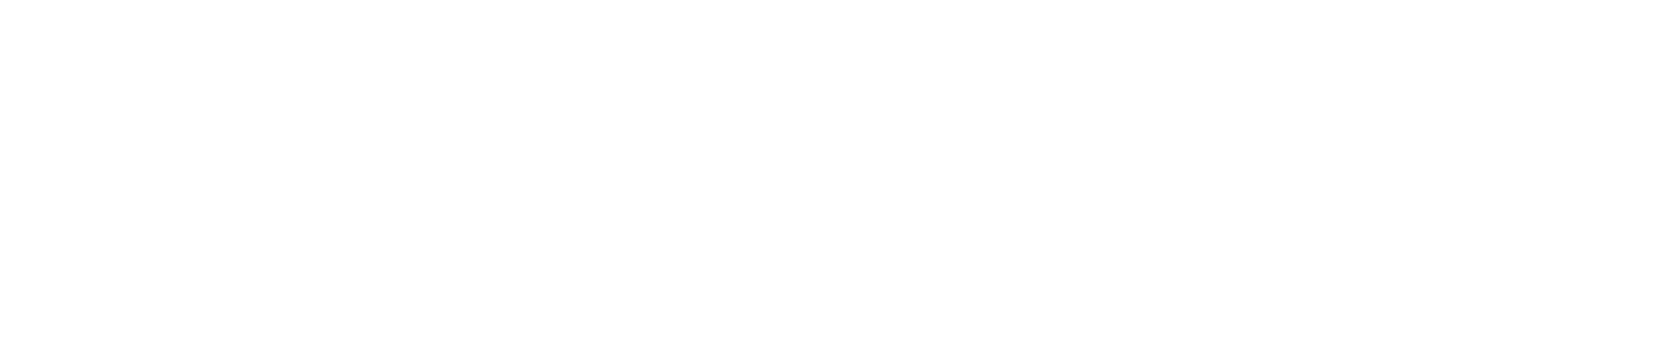 Sylvamo logo grand pour les fonds sombres (PNG transparent)